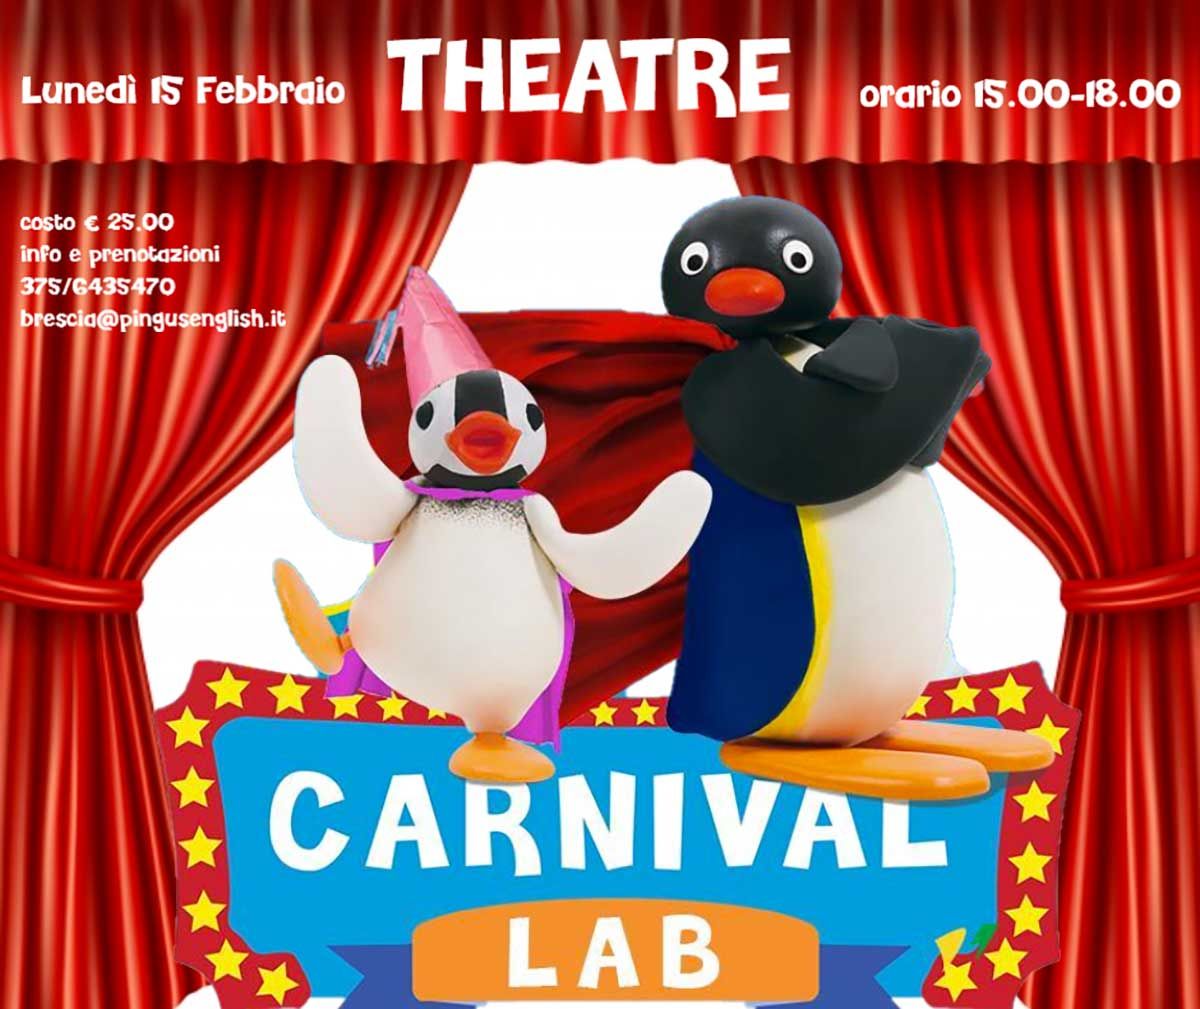 Carnival lab con Pingu's English brescia